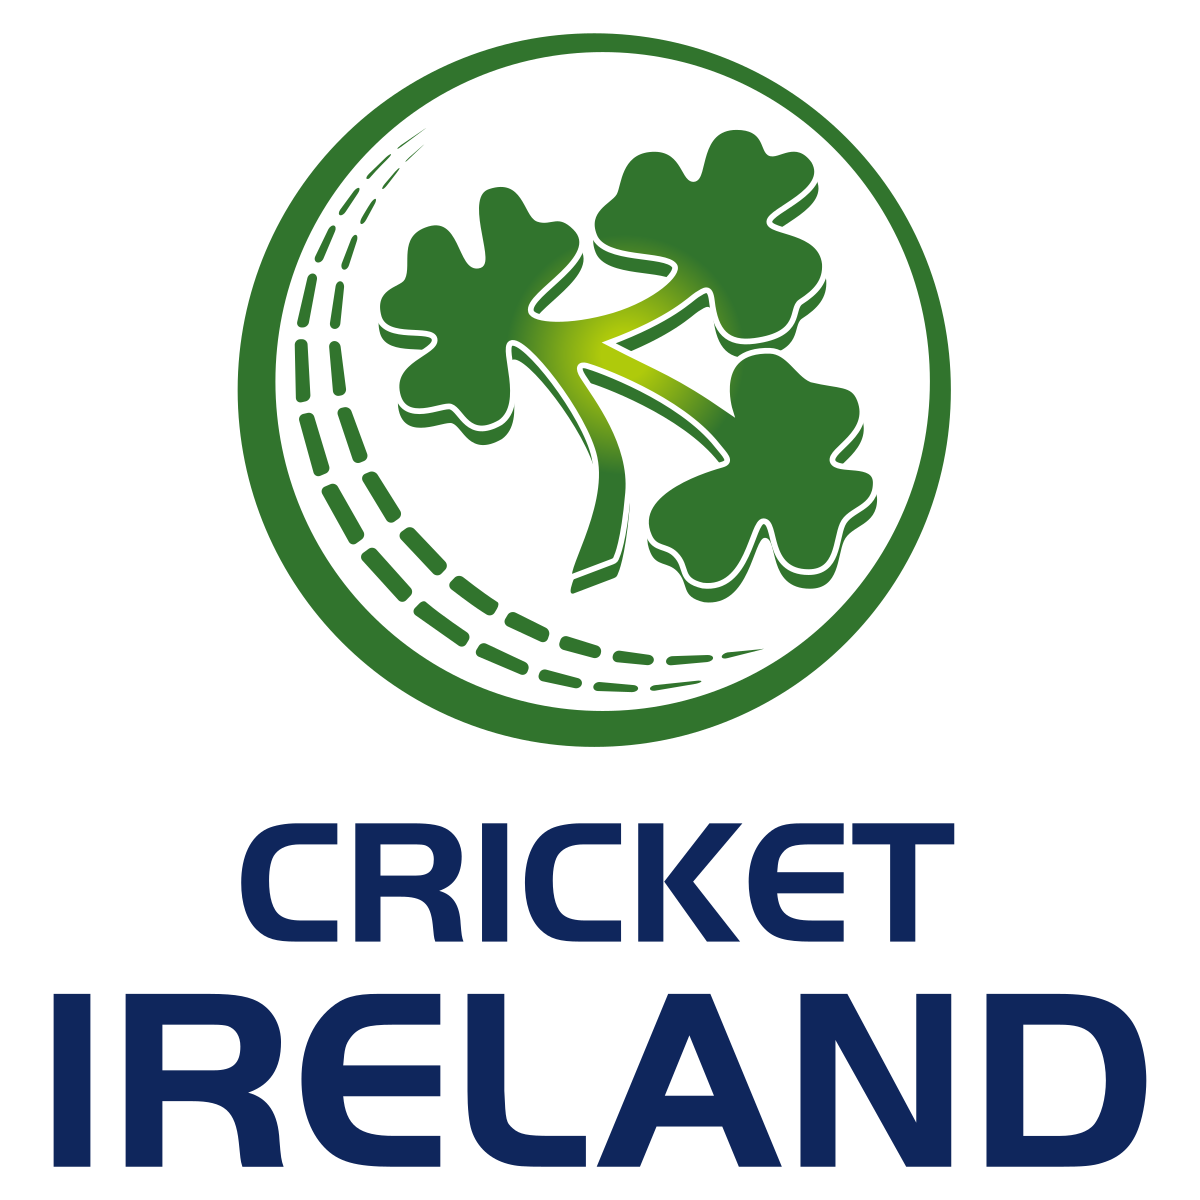 टेस्ट की नम्बर 1 टीम रह चुकी इस टीम के खिलाफ आयरलैण्ड खेलेगा अपना पहला टेस्ट मैच 3